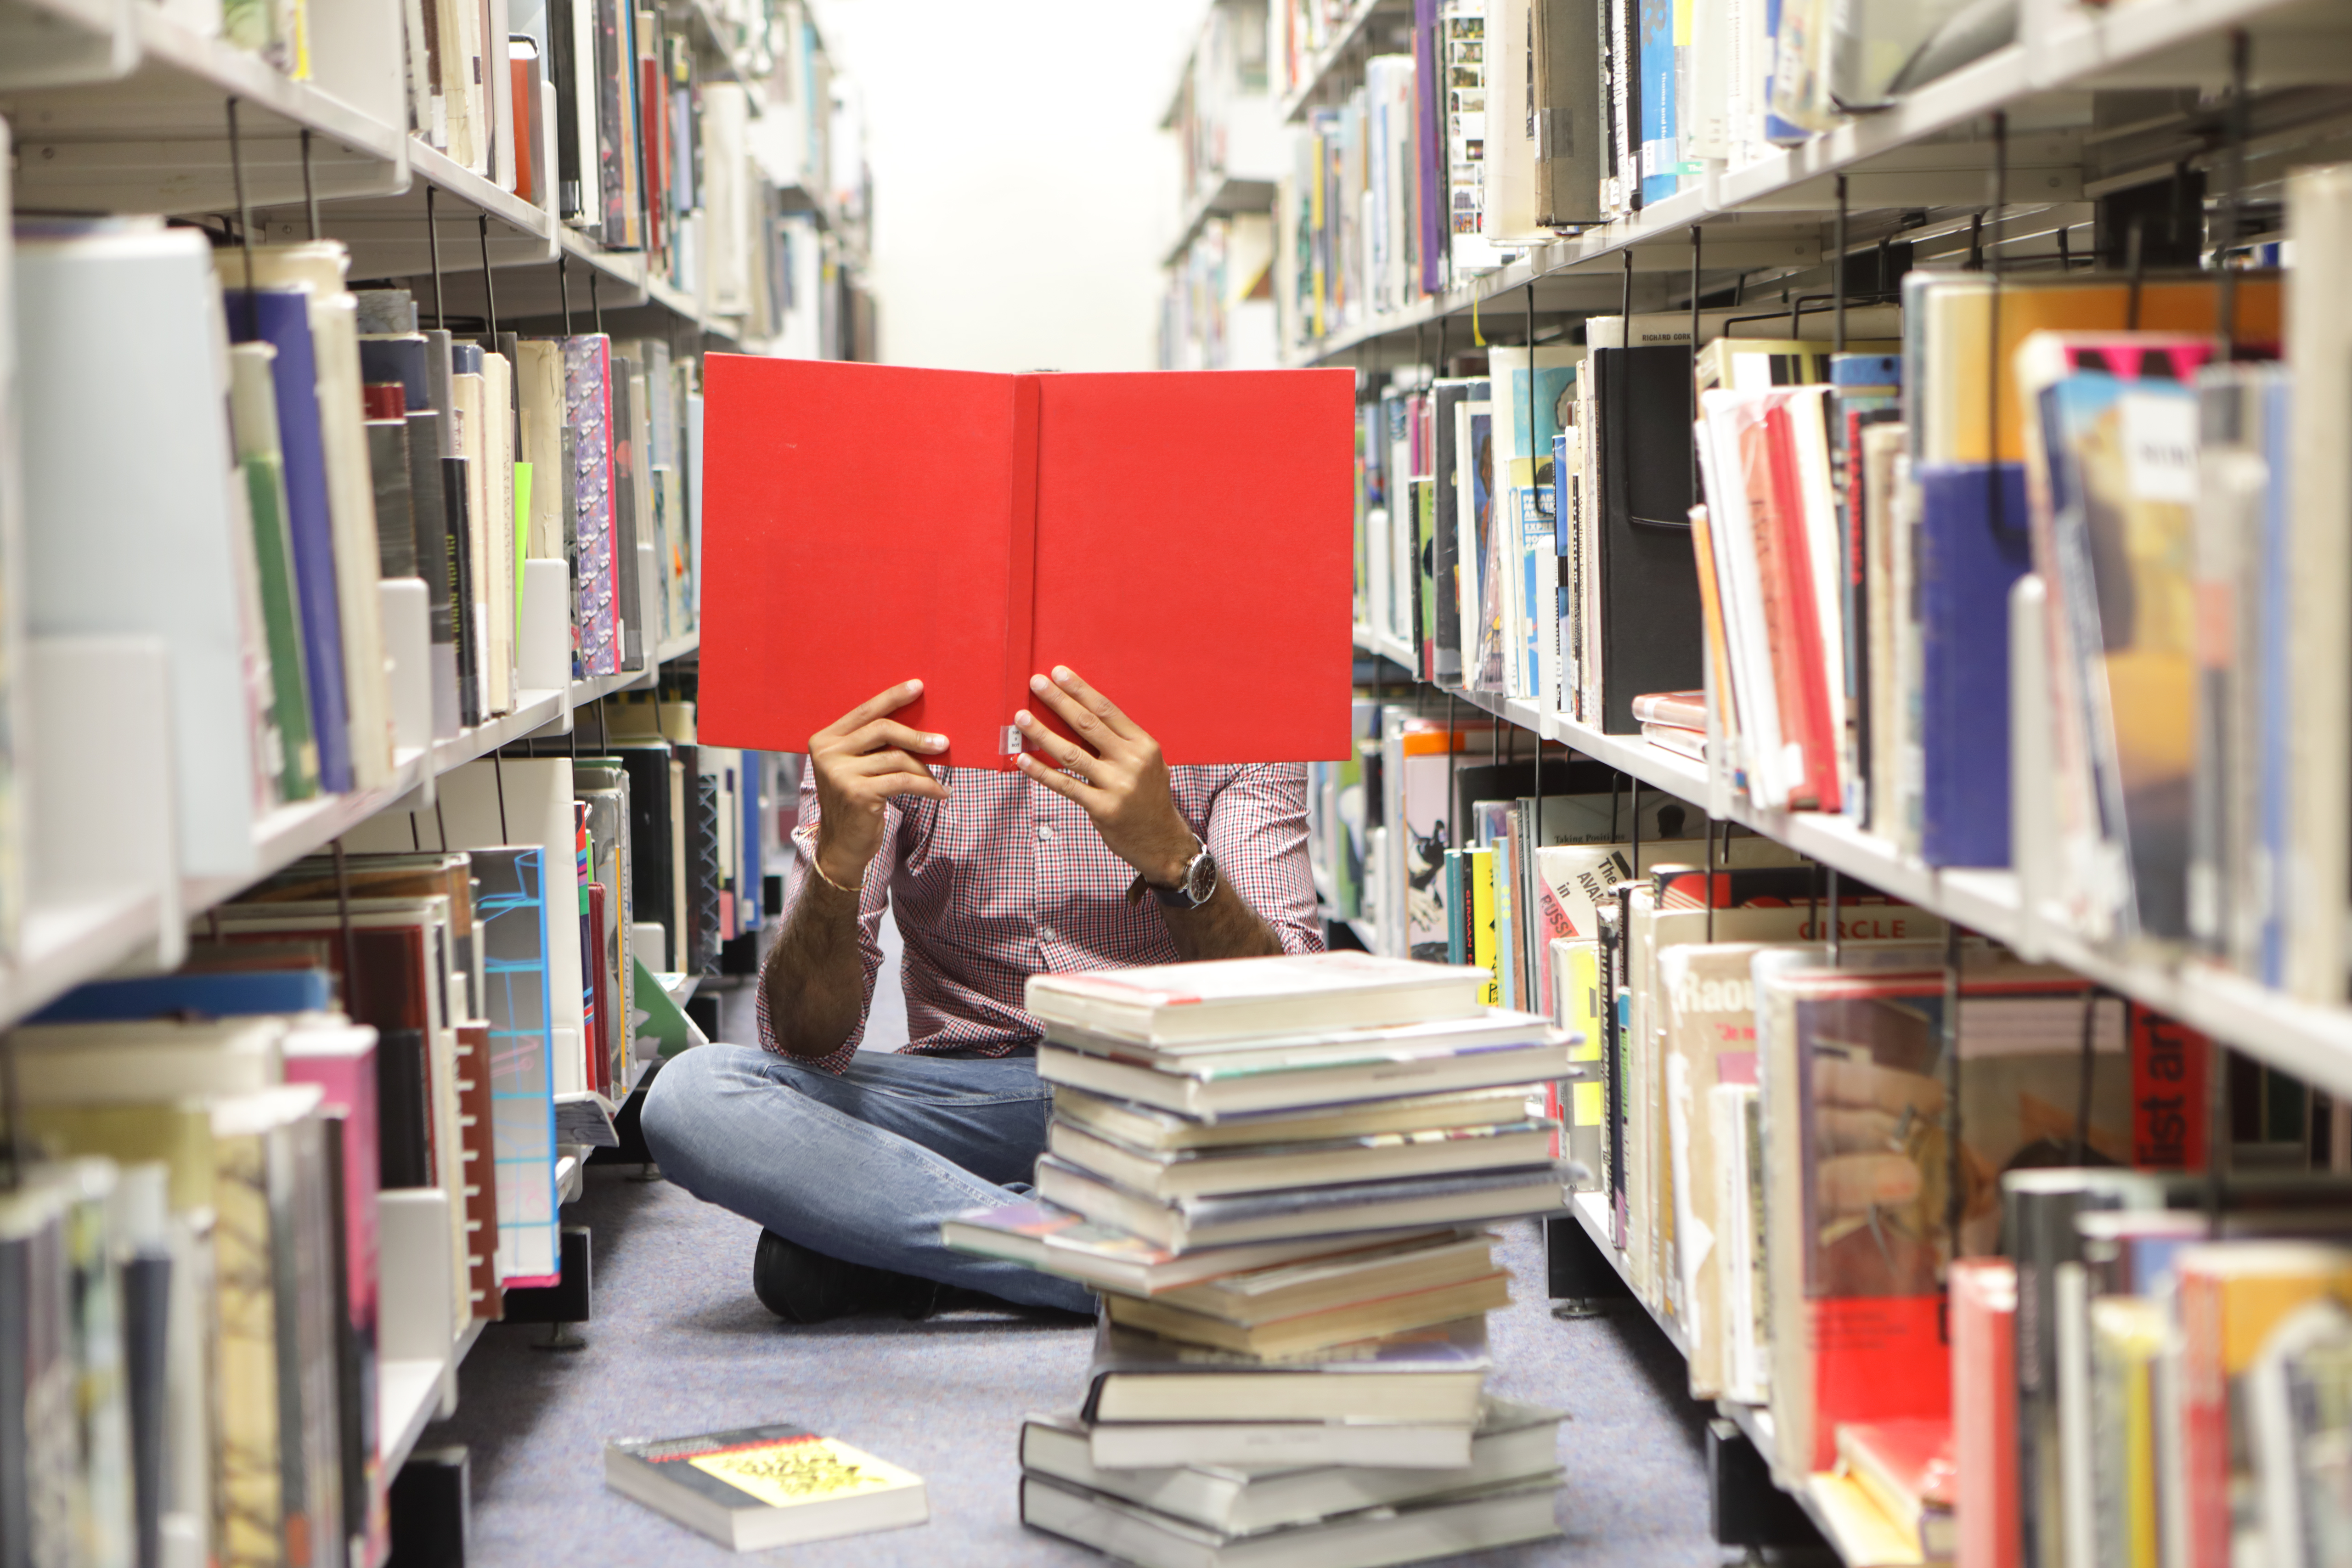 Ein Besuch in der Bibliothek kann den gleichen Glückskick auslösen wie eine kräftige Gehaltserhöhung